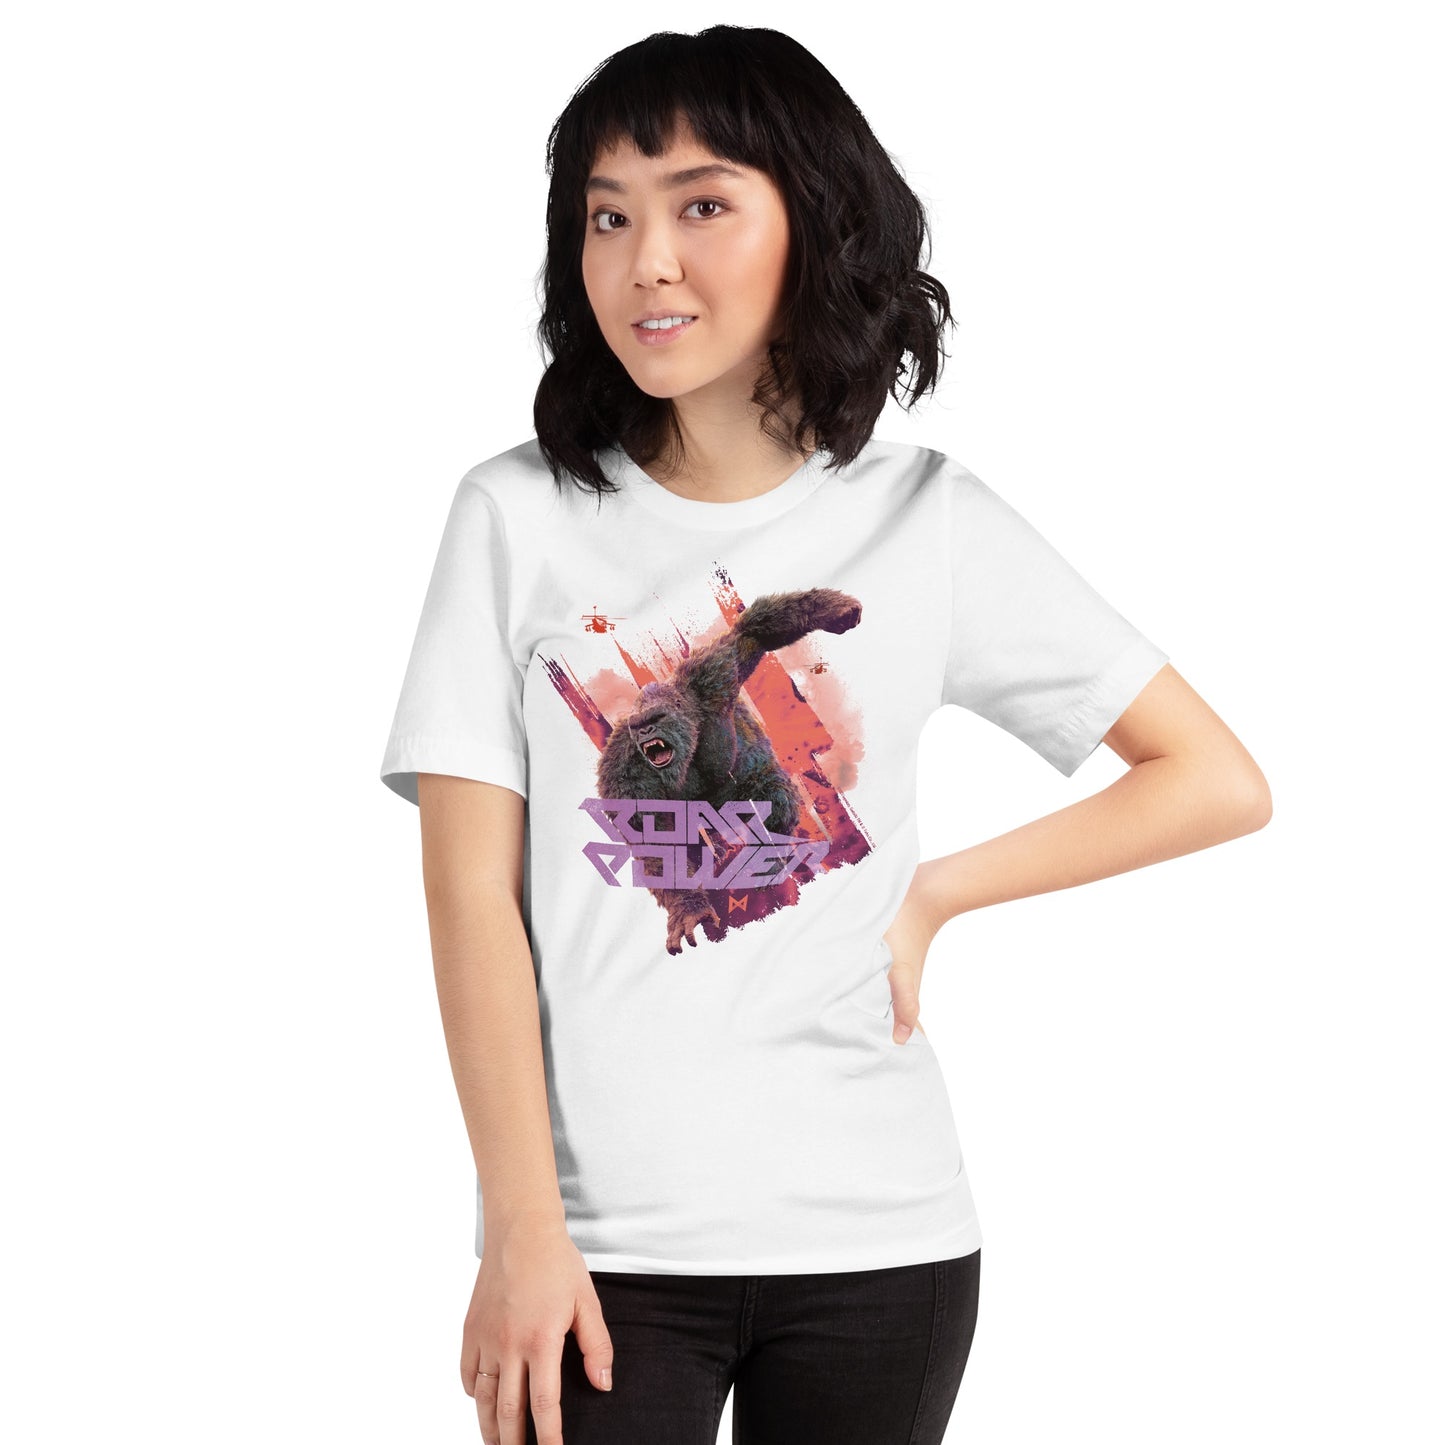 Monsterverse Godzilla x Kong: The New Empire Roar Power Adult T-Shirt